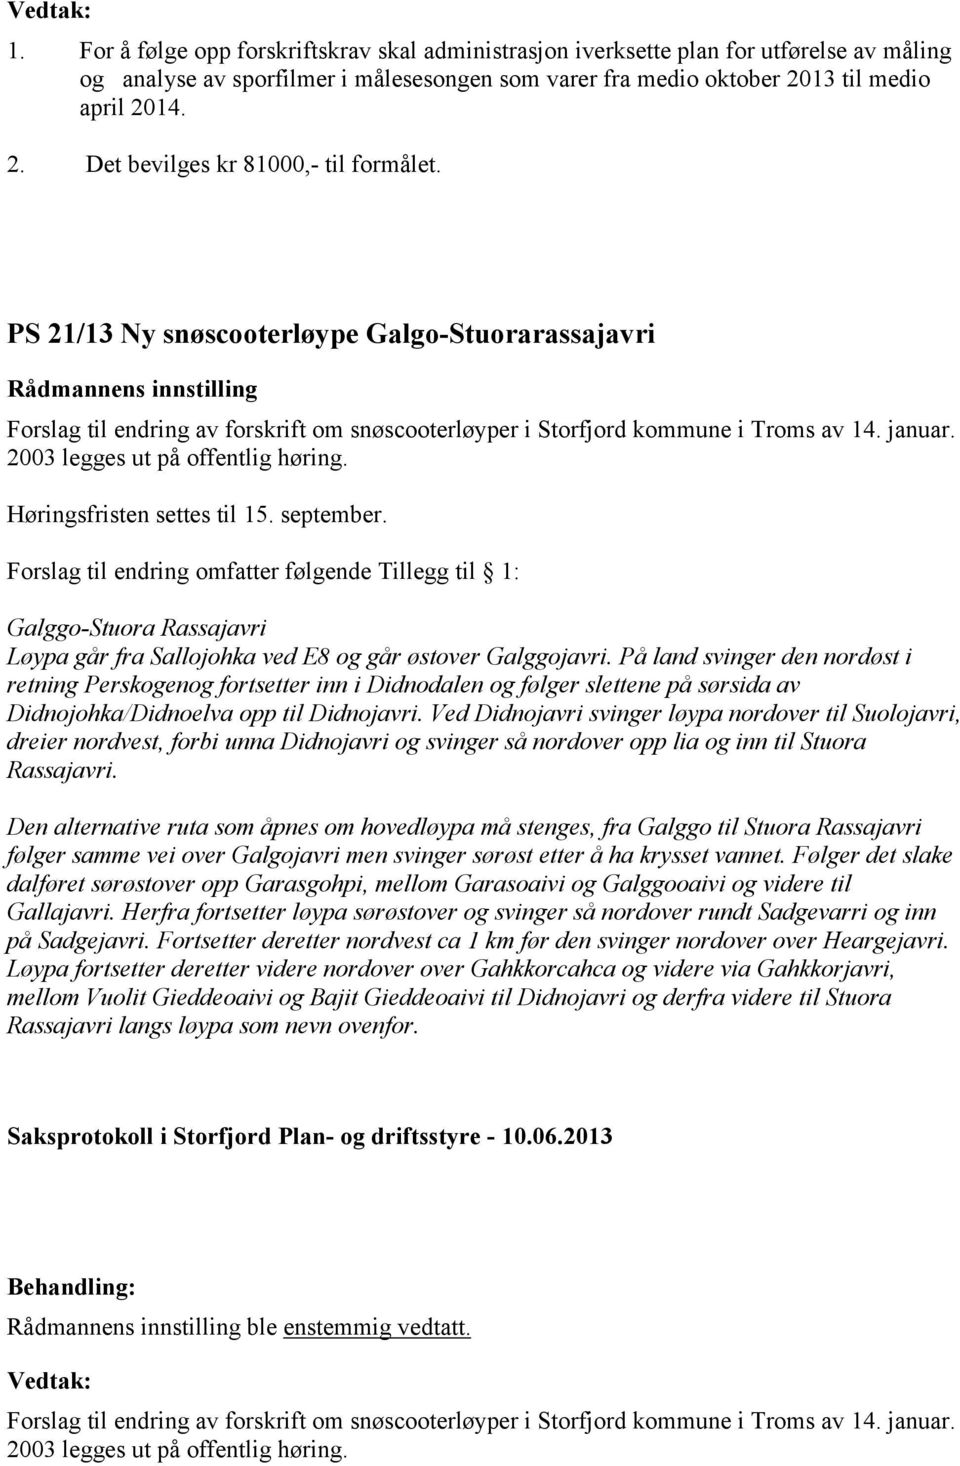 PS 21/13 Ny snøscooterløype Galgo-Stuorarassajavri Forslag til endring av forskrift om snøscooterløyper i Storfjord kommune i Troms av 14. januar. 2003 legges ut på offentlig høring.